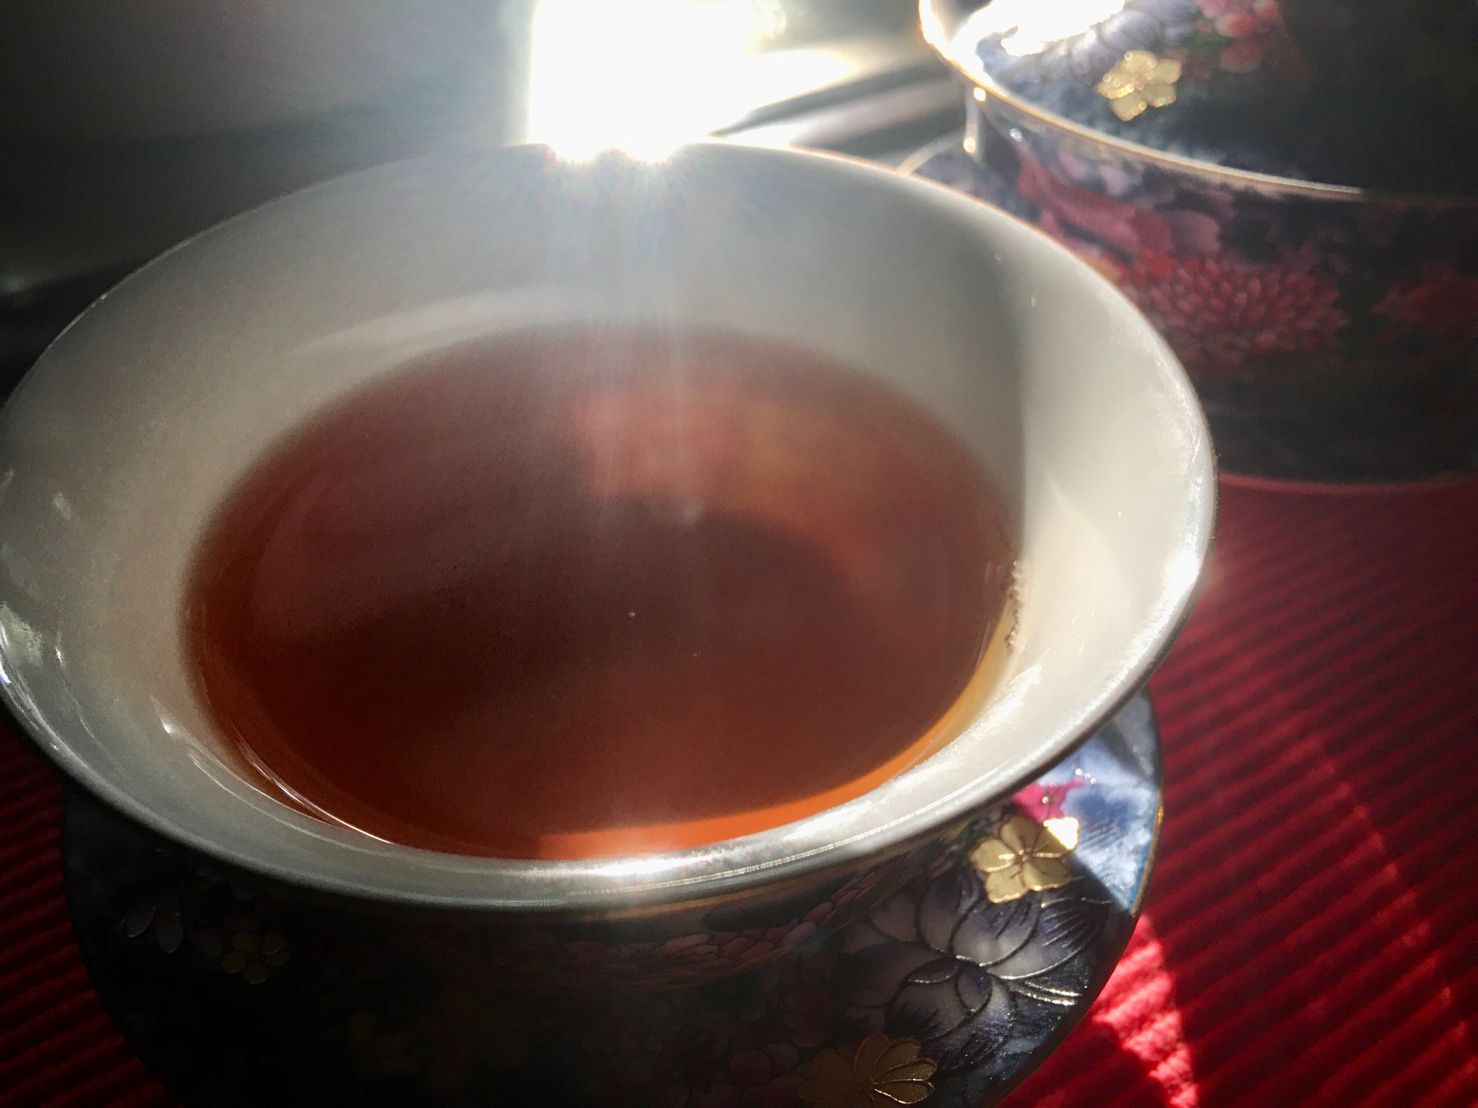 Nán Nuò Gǔ Hóng Shài Hóng Chá, 南糯古红晒红茶, Nannuo Ancient Sun-dried Black Tea